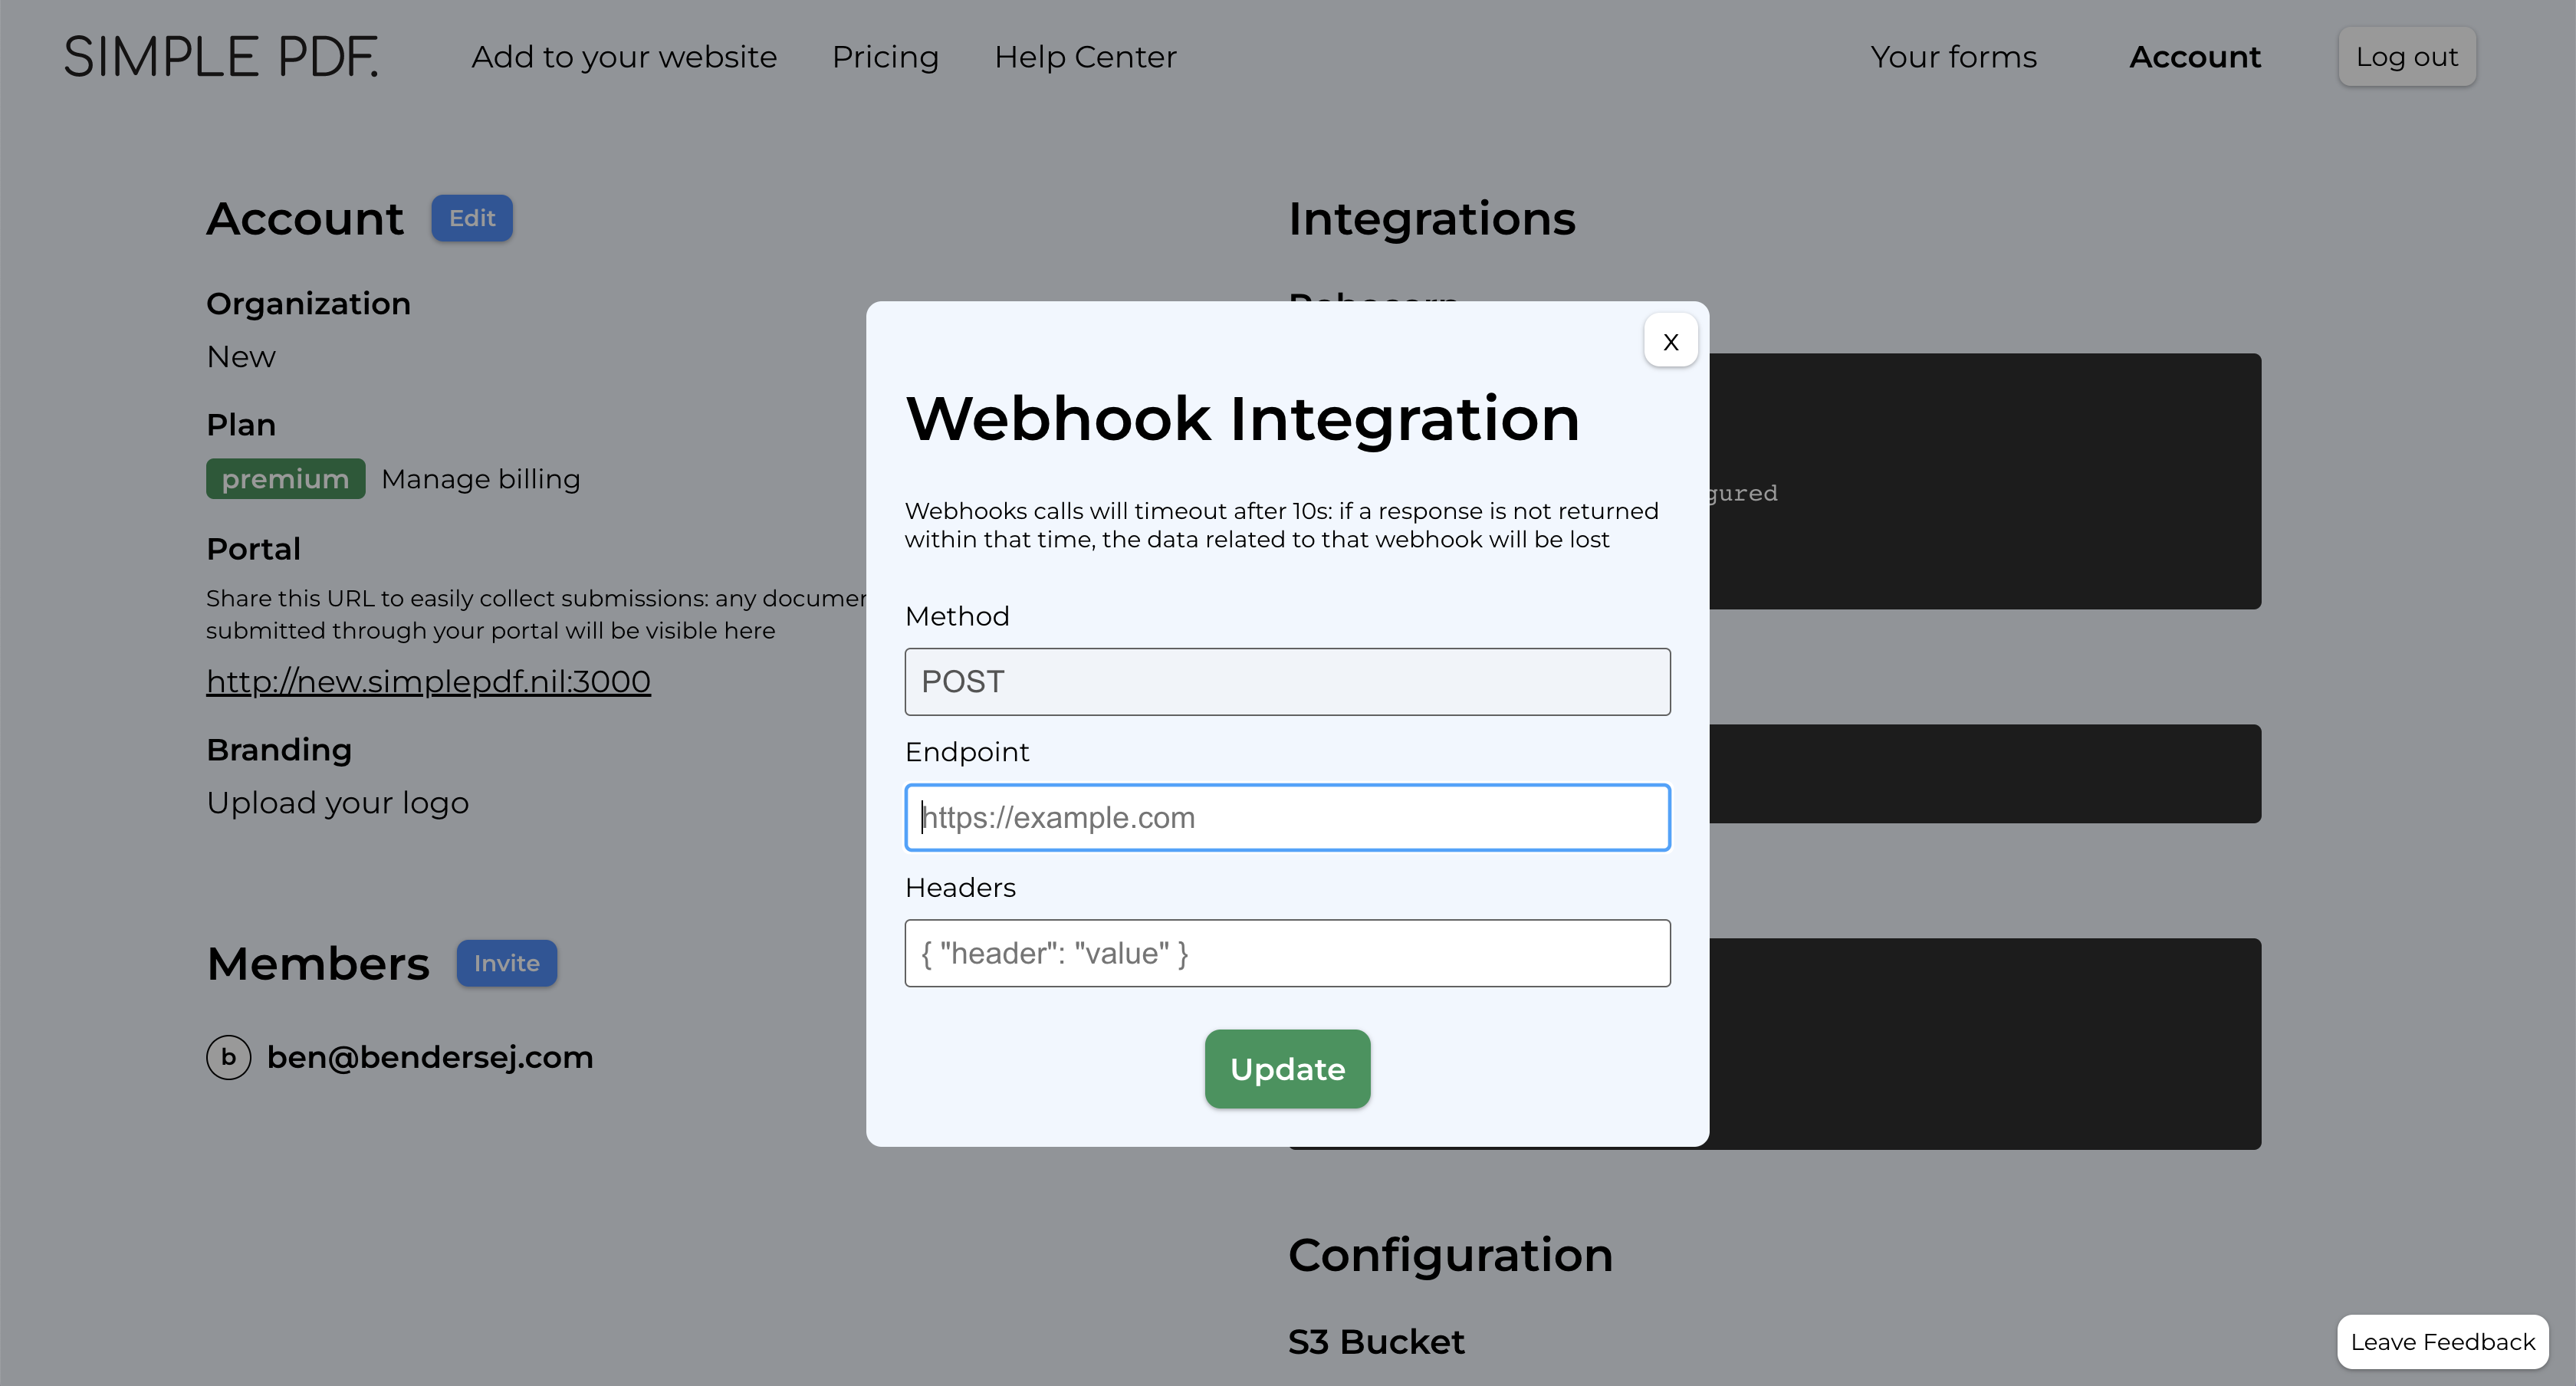 Configure webhooks: configuration details